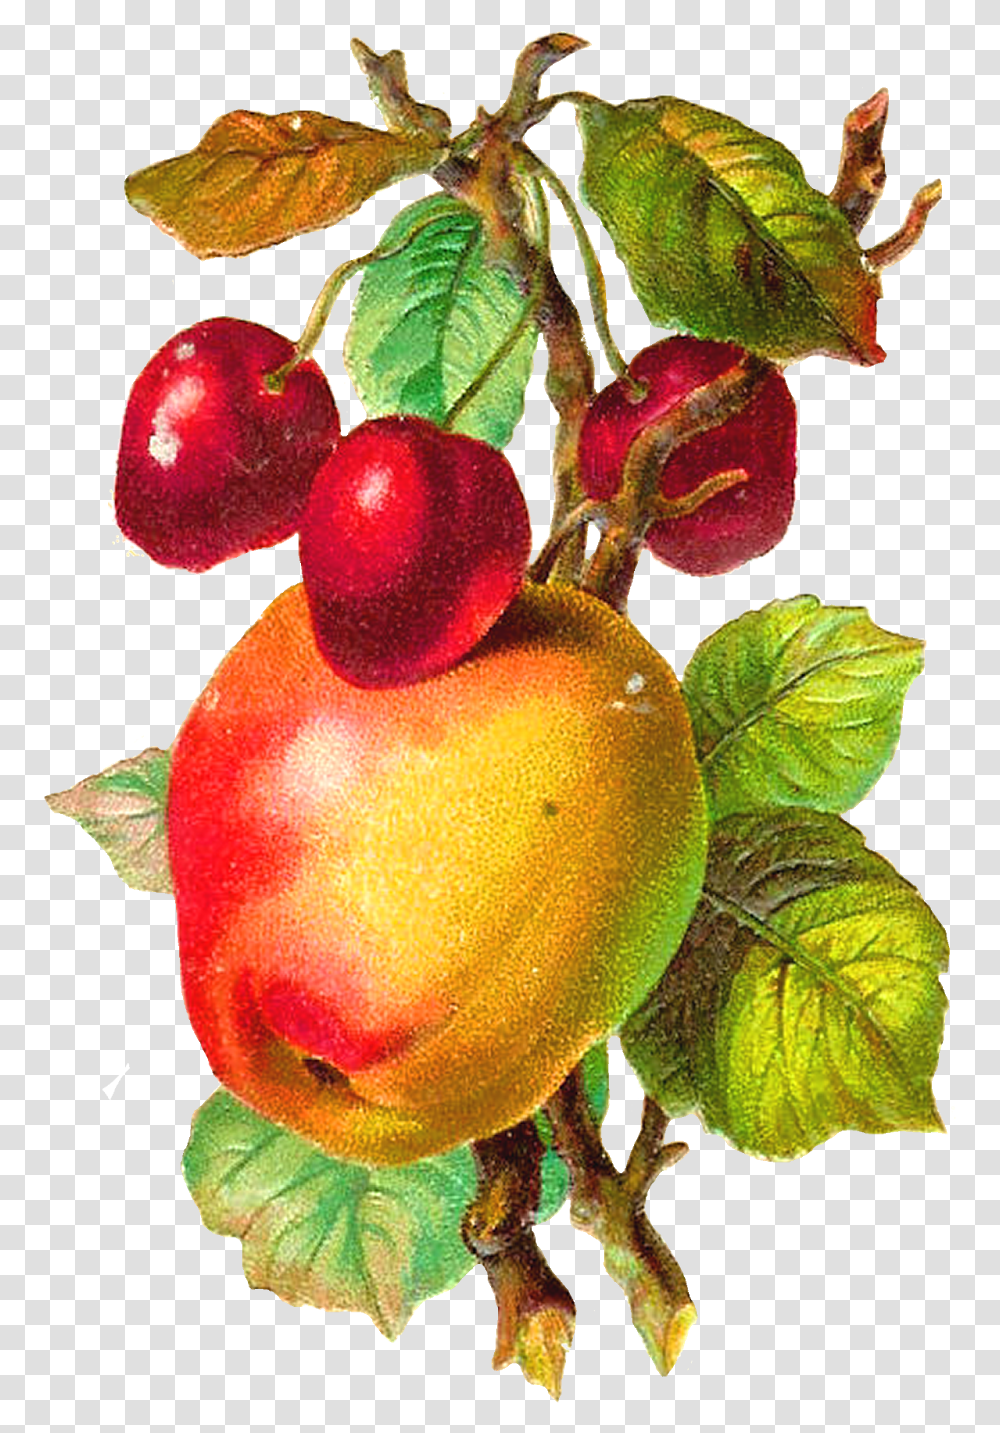 Download Hd Antique Apple Clipart Vintage Apple, Plant, Fruit, Food, Produce Transparent Png